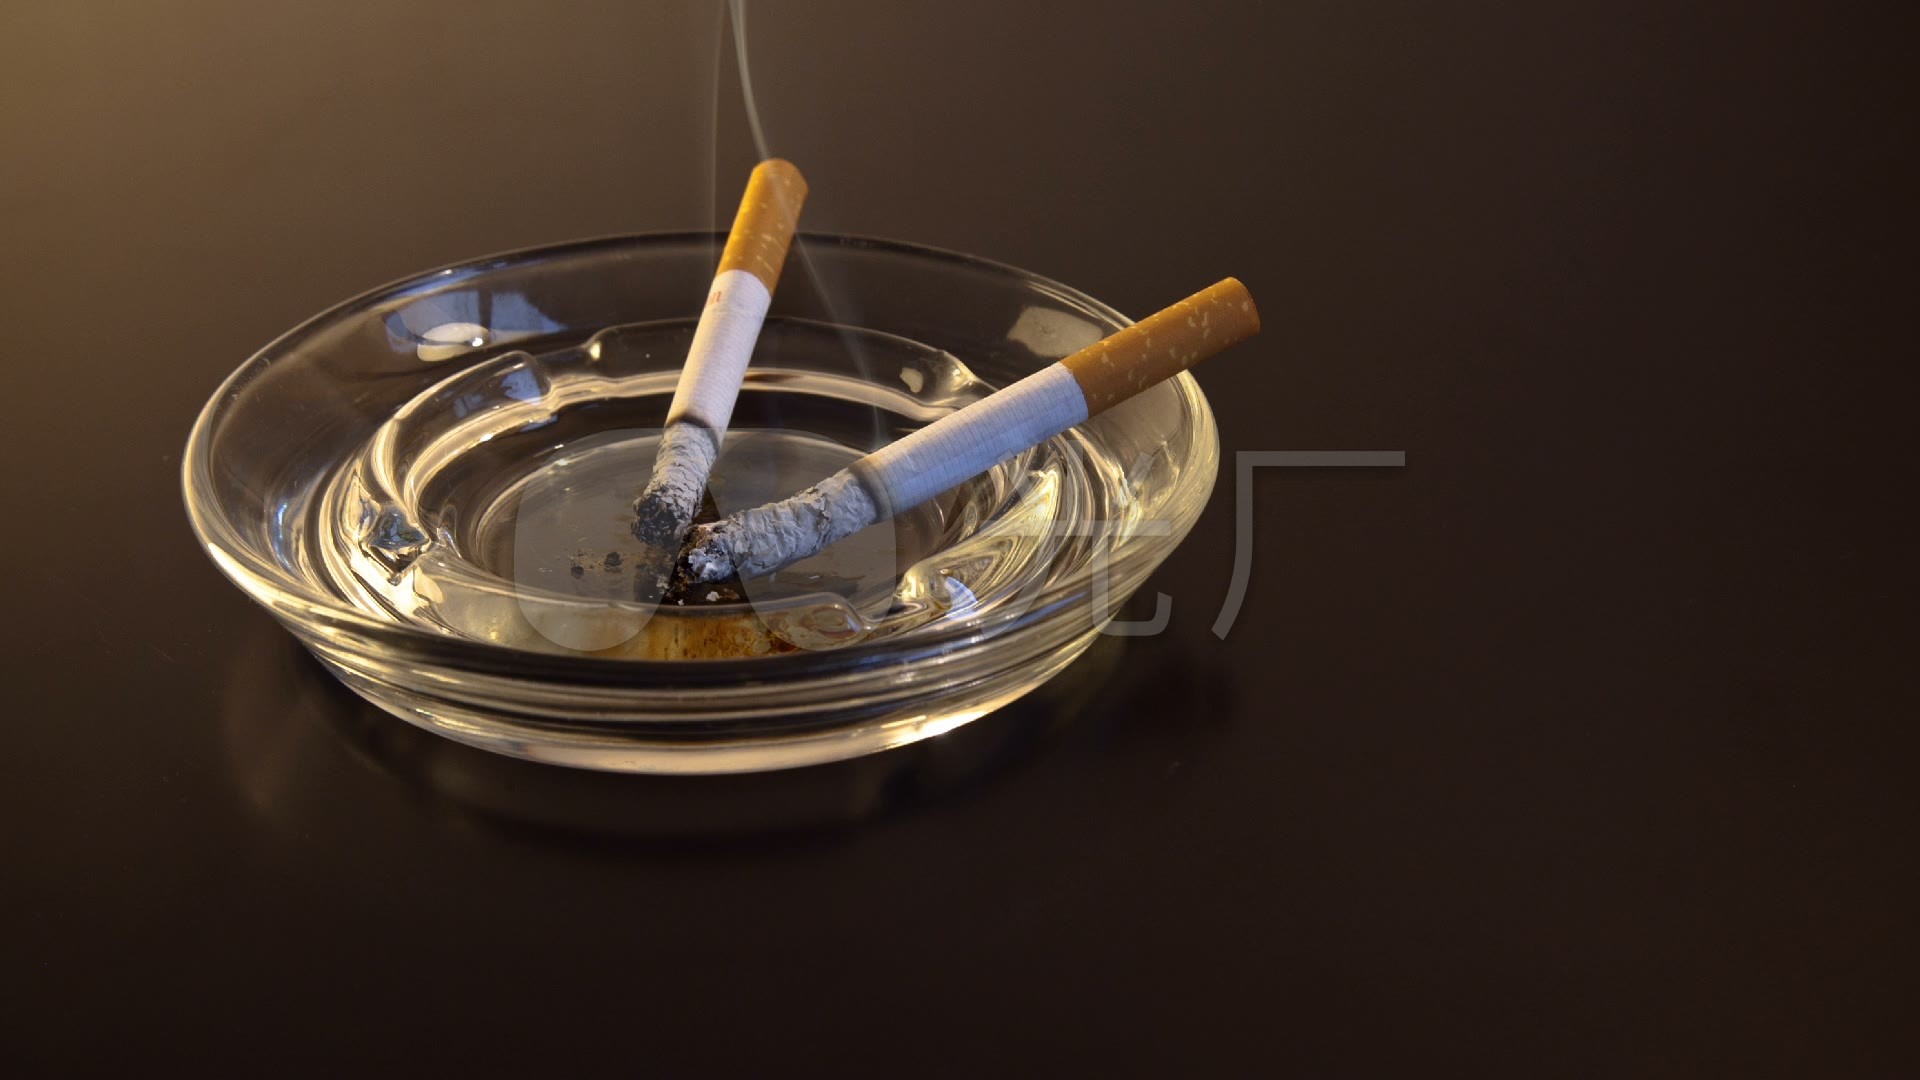 电镀烟灰缸 旋转烟灰缸 不锈钢烟灰缸 创意礼品台式烟灰缸-阿里巴巴